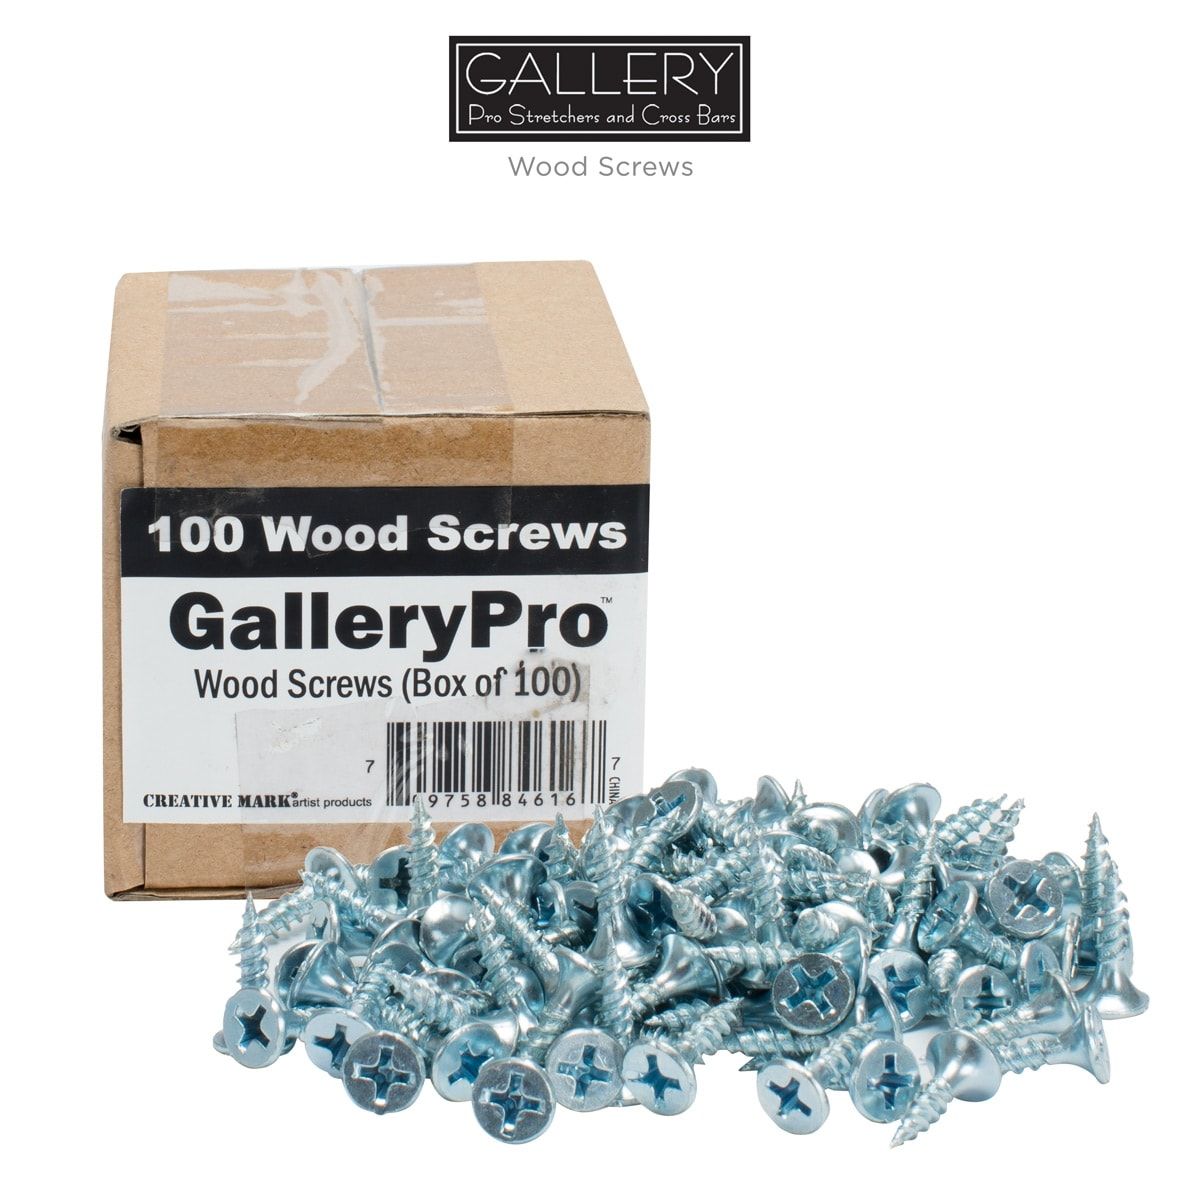 Gallery Pro Wood Screws